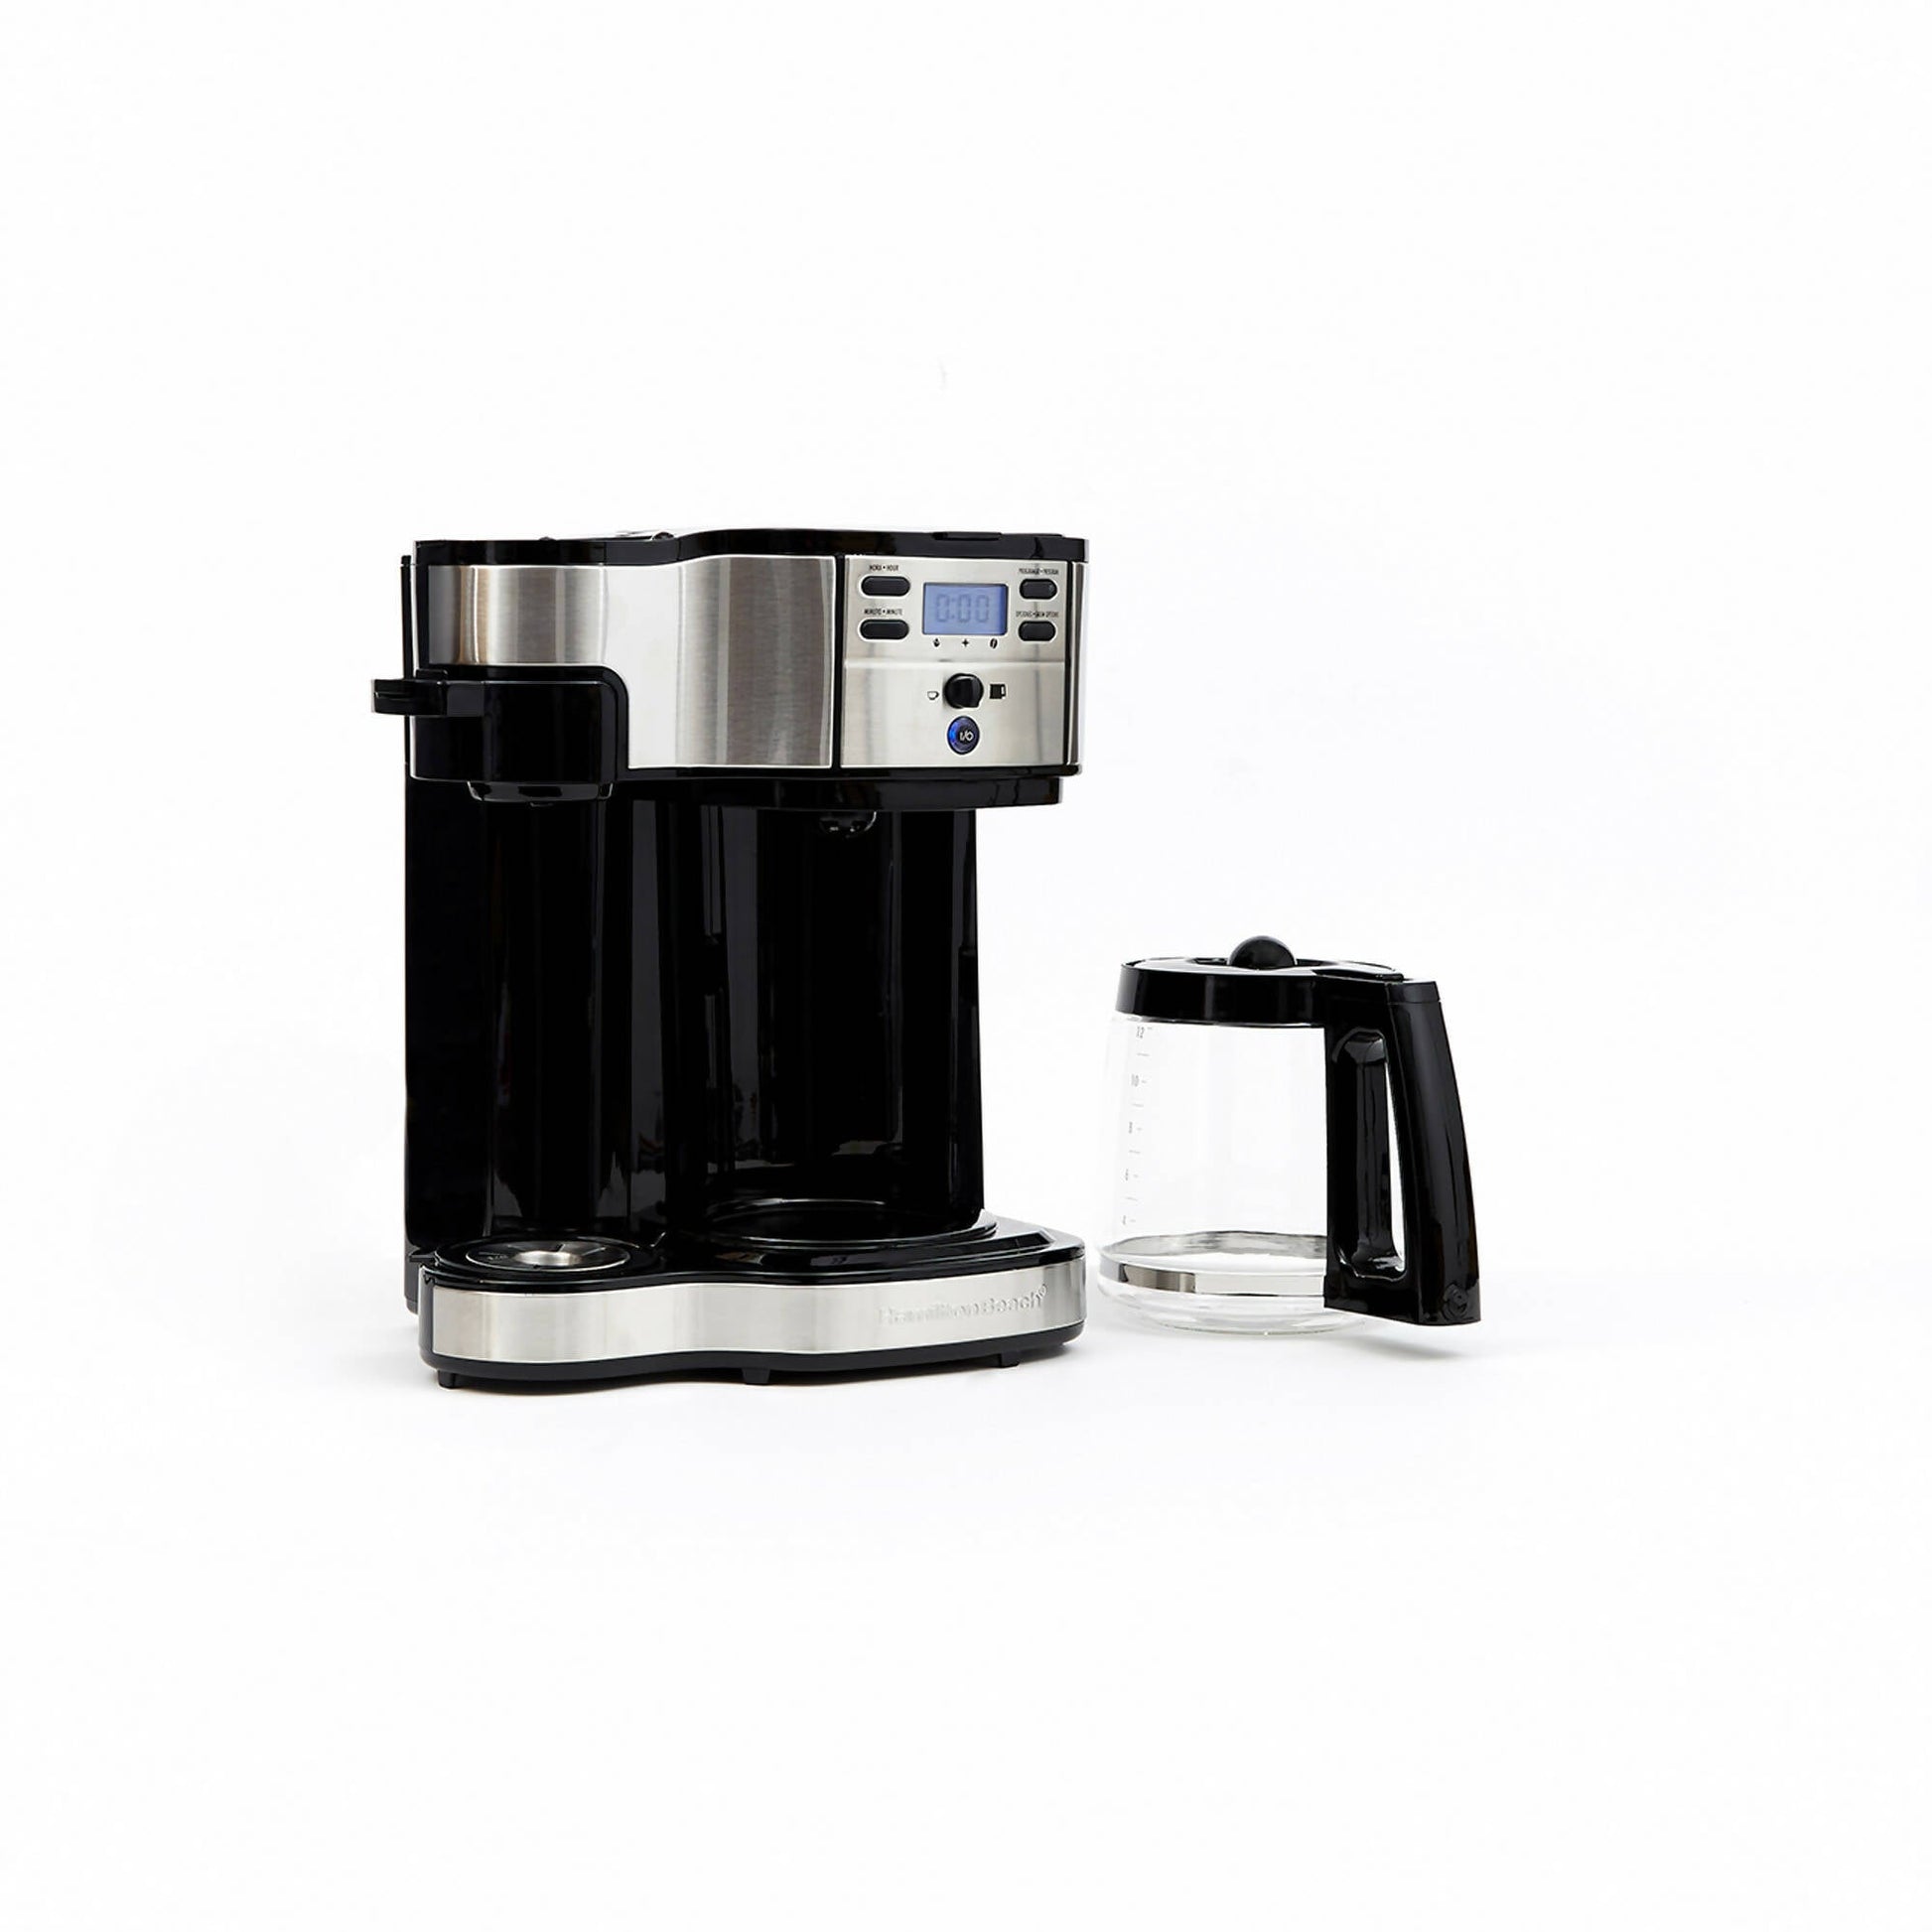 Cafetera Programable 49980-CL Doble Función Espresso + Americana Hamilton Beach8#Negro